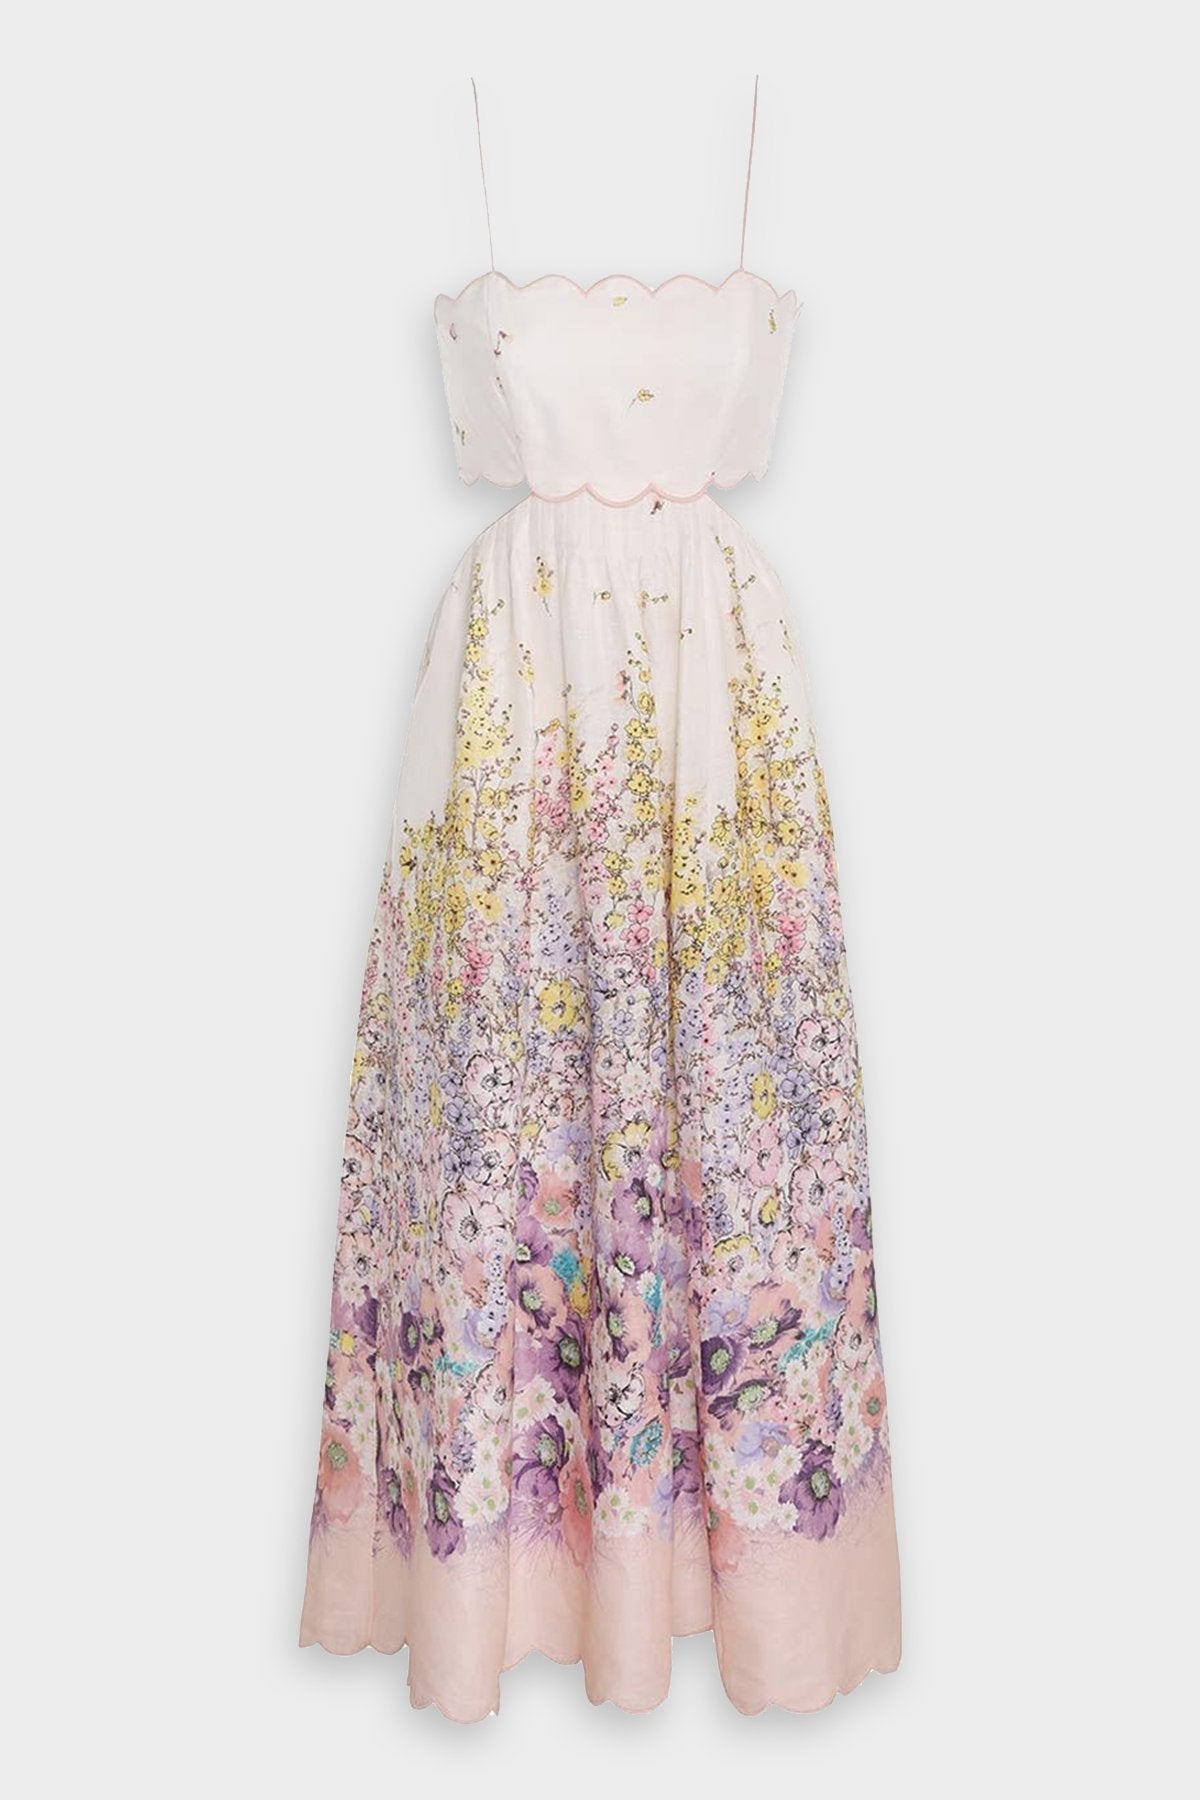 Jude Scallop Midi Dress in Peach Gradient Floral - shop-olivia.com